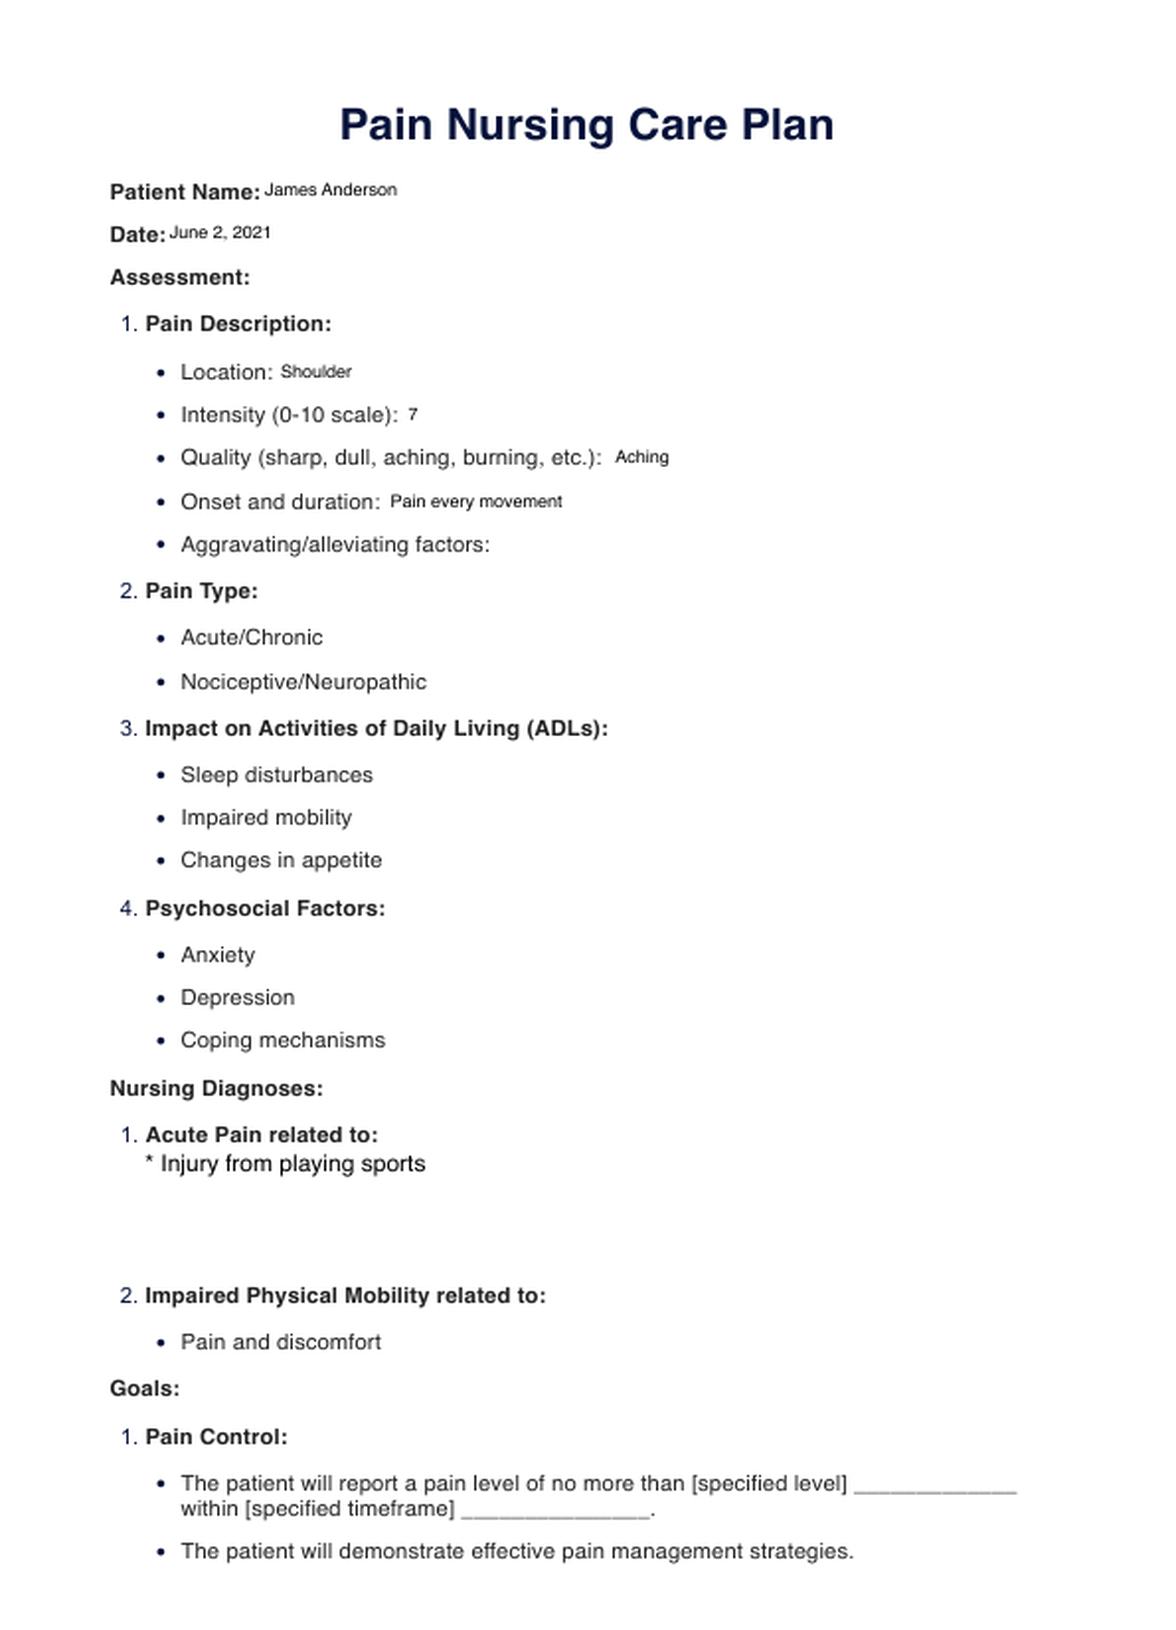 Pain Nursing Care Plan PDF Example